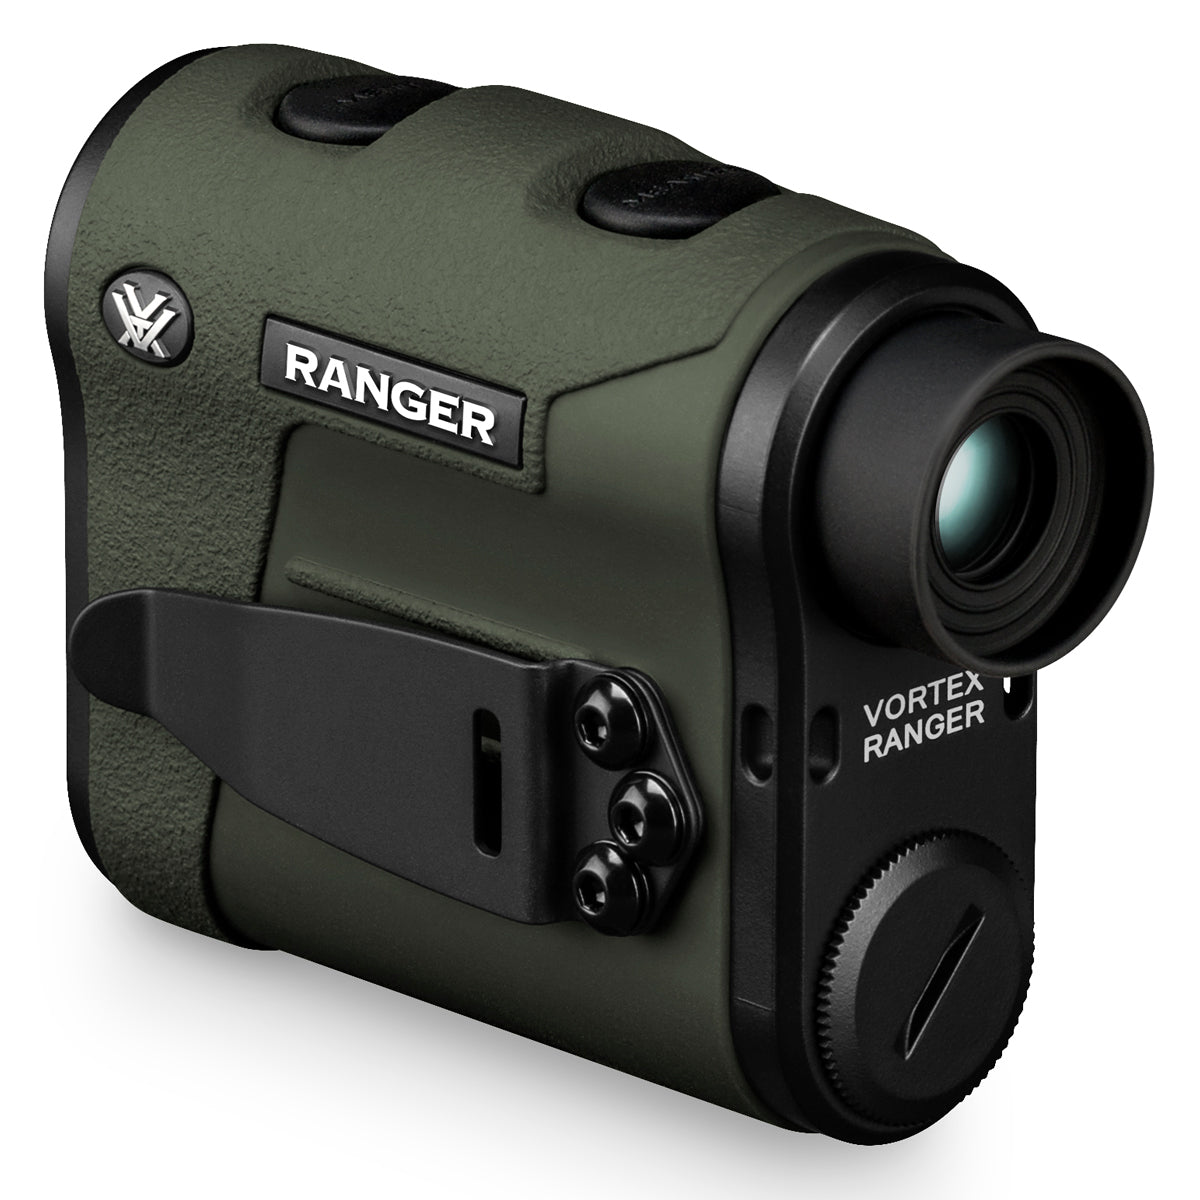 Vortex Ranger 1800 Laser Rangefinder in Vortex Ranger 1800 Laser Rangefinder by Vortex Optics | Optics - goHUNT Shop by GOHUNT | Vortex Optics - GOHUNT Shop